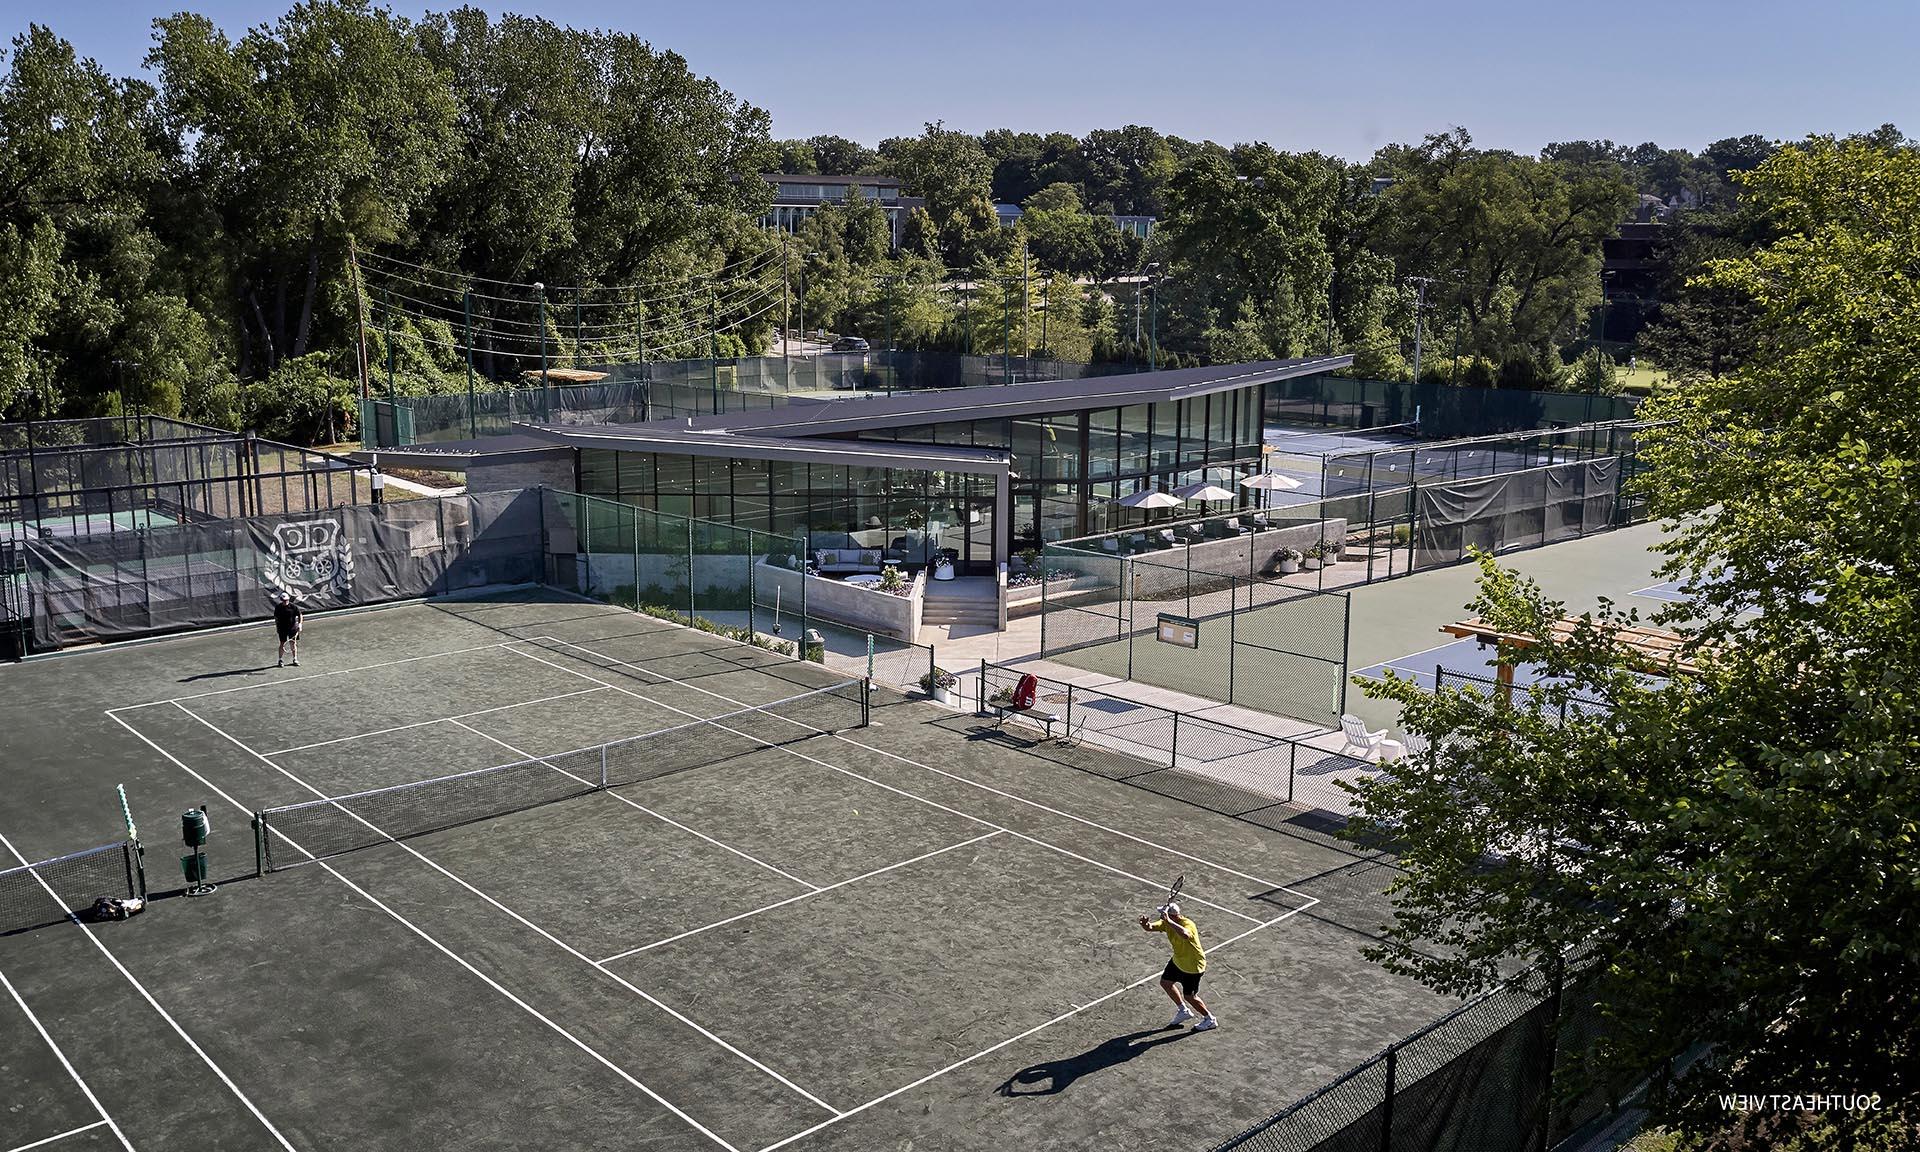 Tennis Pavilion tennis court